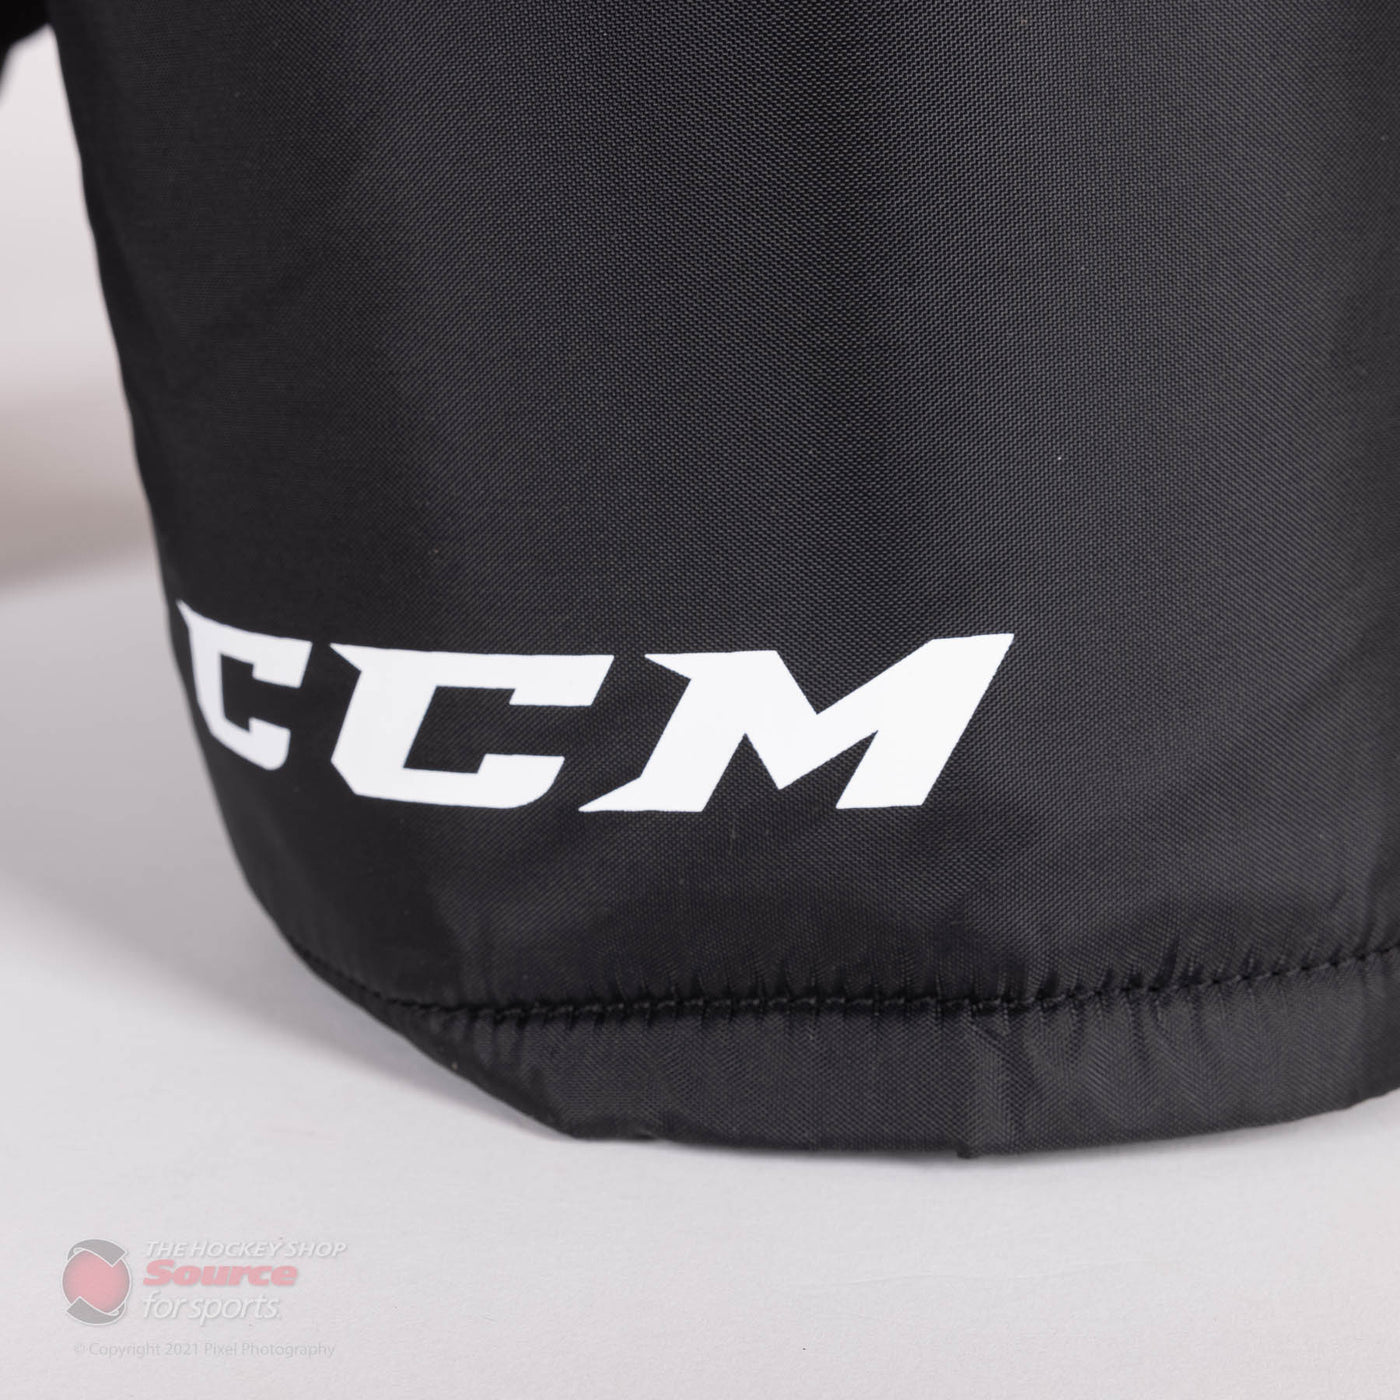 CCM Tacks 9550 Senior Hockey Pants